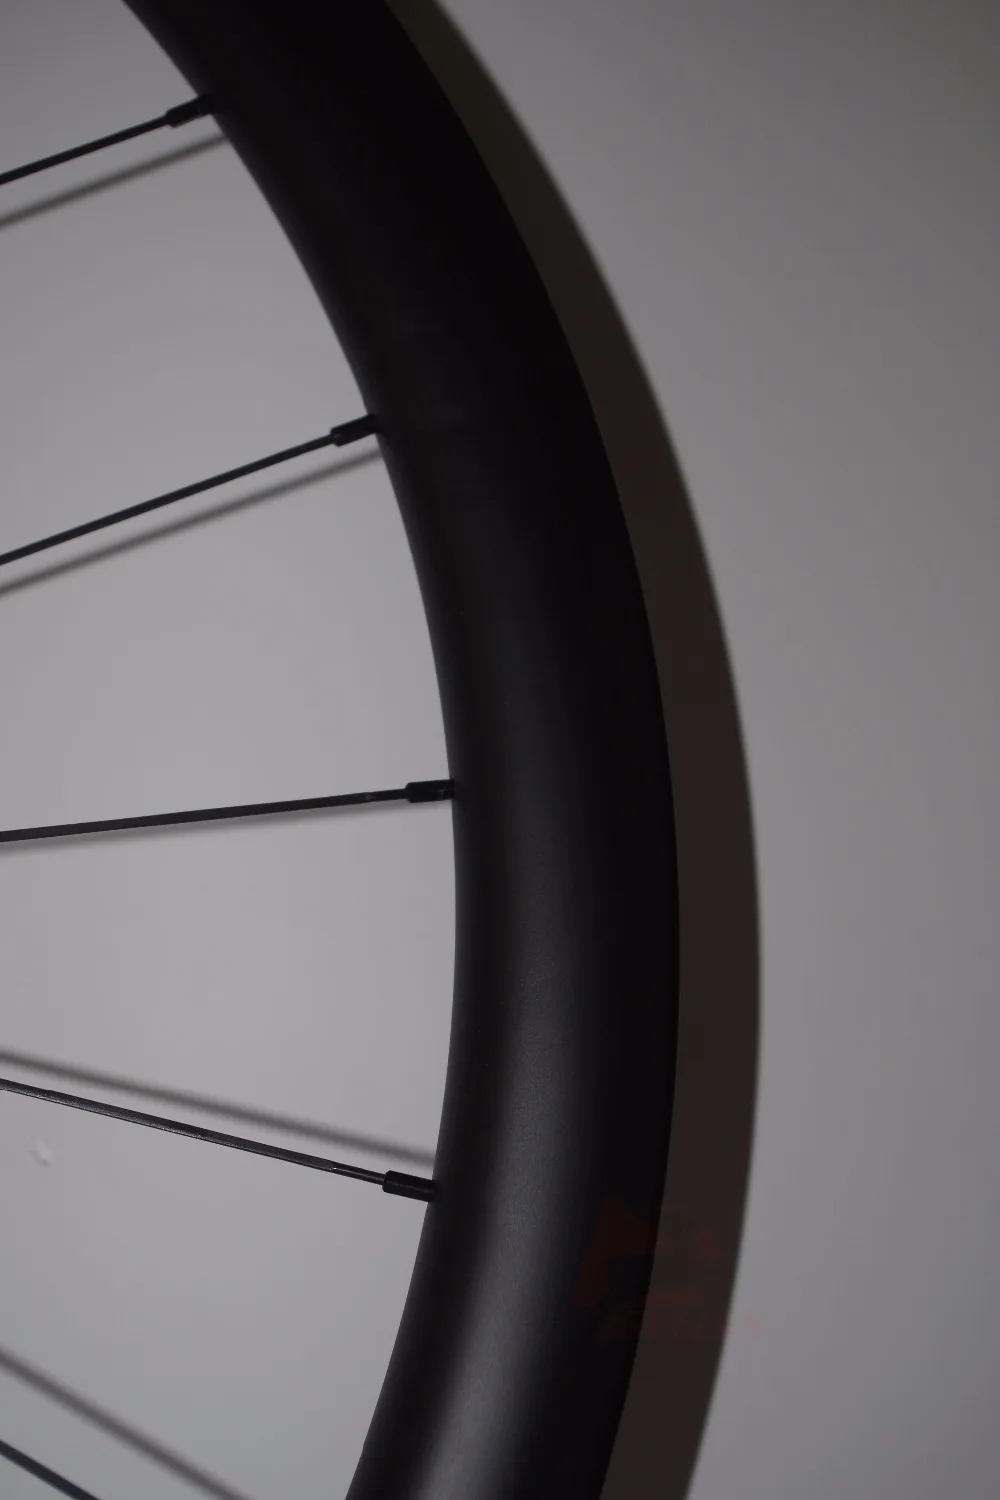 1303 Г легкий 700C 38 мм Асимметричный карбоновый набор колес для велосипеда бескамерная покрышка дорожный диск для велокросса СХ колеса велосипеда 24H 28H XDR